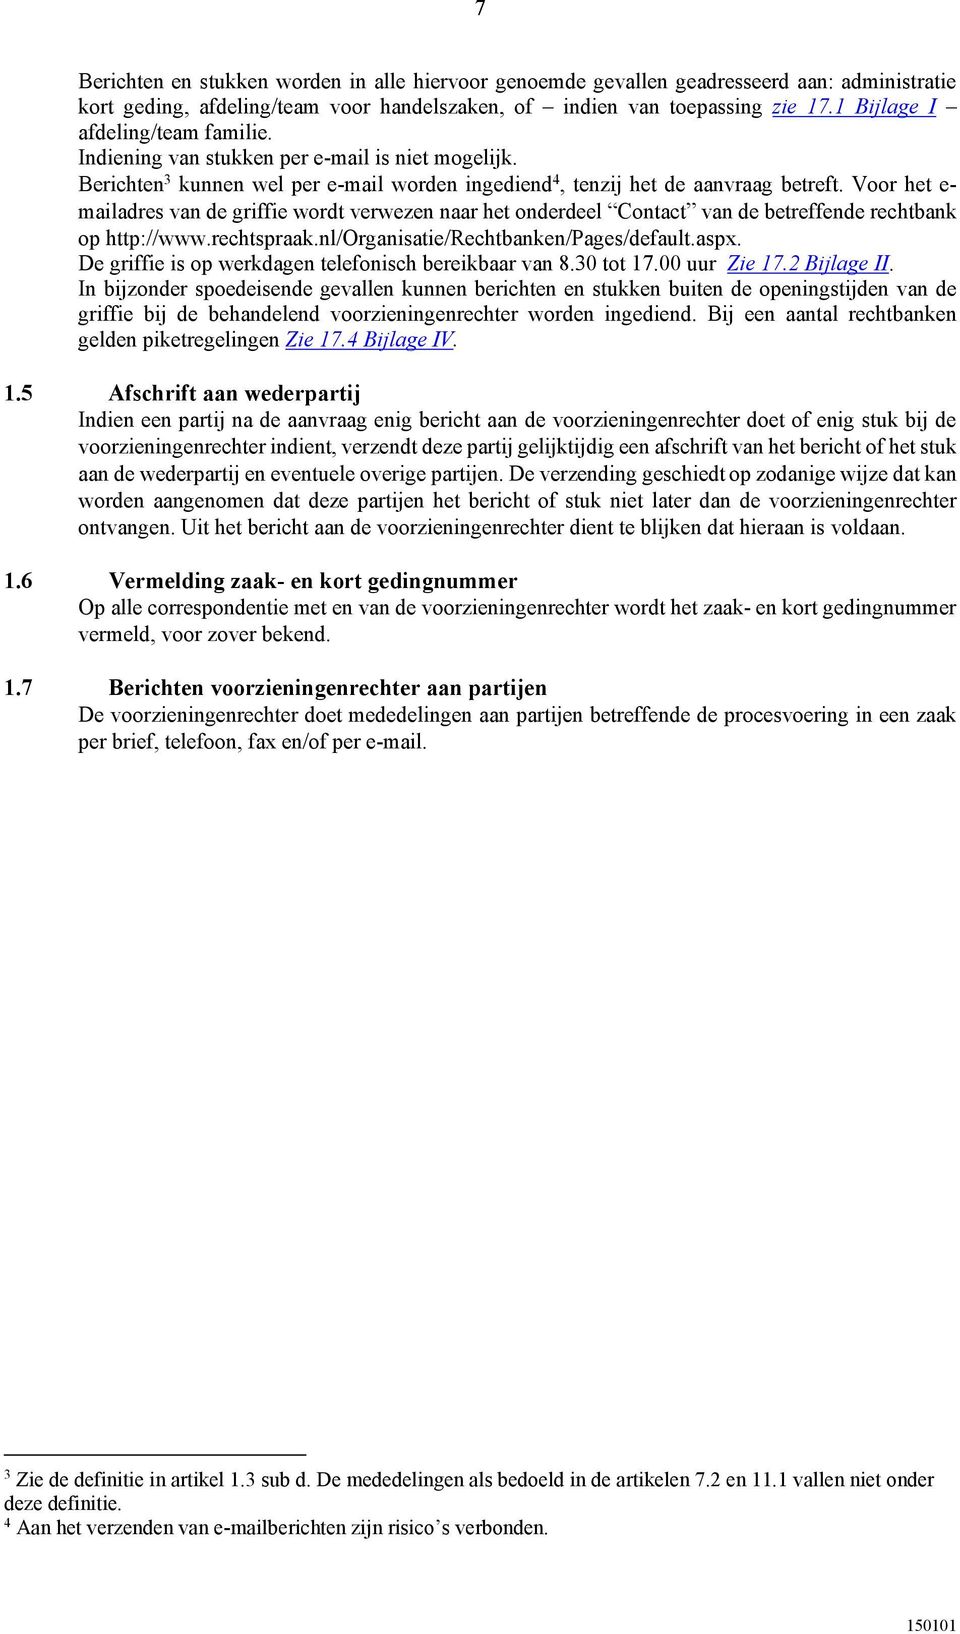 Voor het e- mailadres van de griffie wordt verwezen naar het onderdeel Contact van de betreffende rechtbank op http://www.rechtspraak.nl/organisatie/rechtbanken/pages/default.aspx.